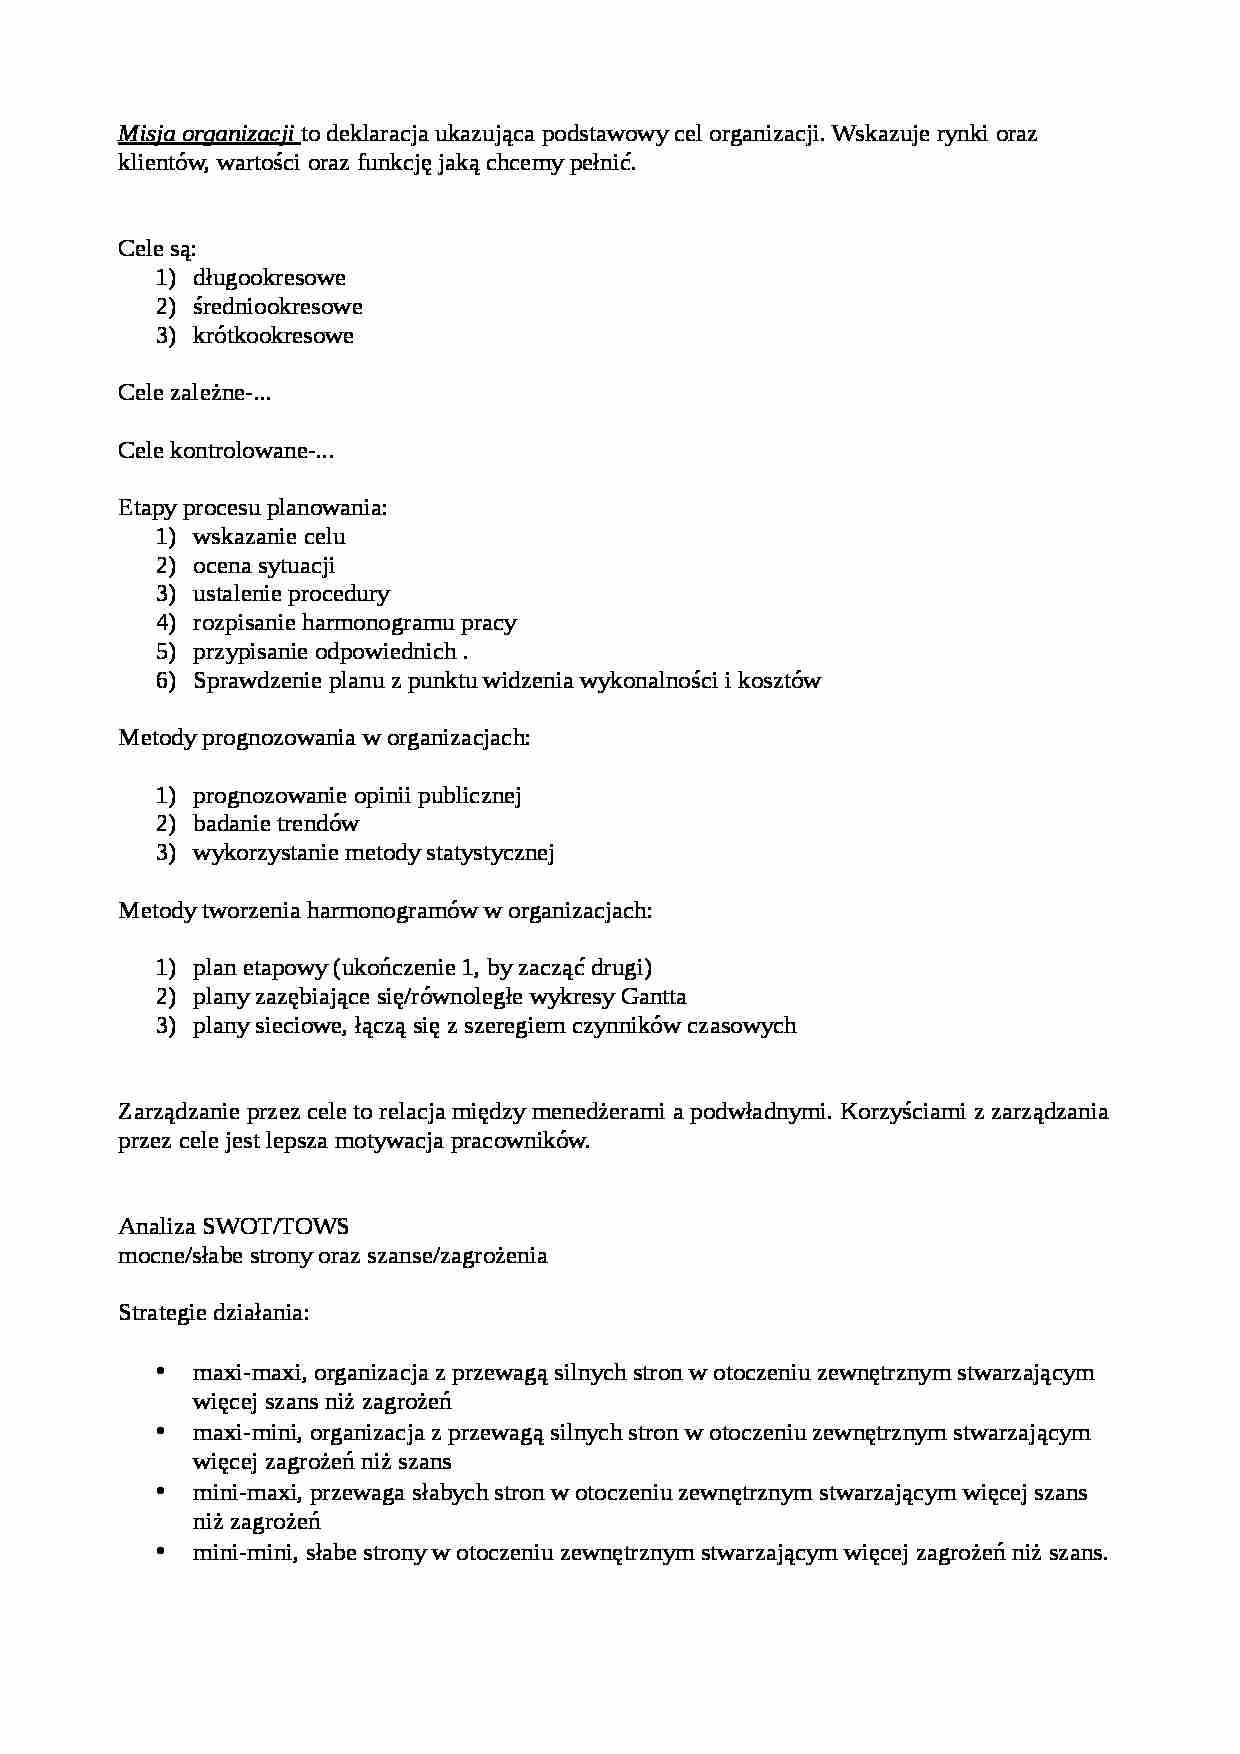 Analiza SWOT - Misja organizacji - strona 1